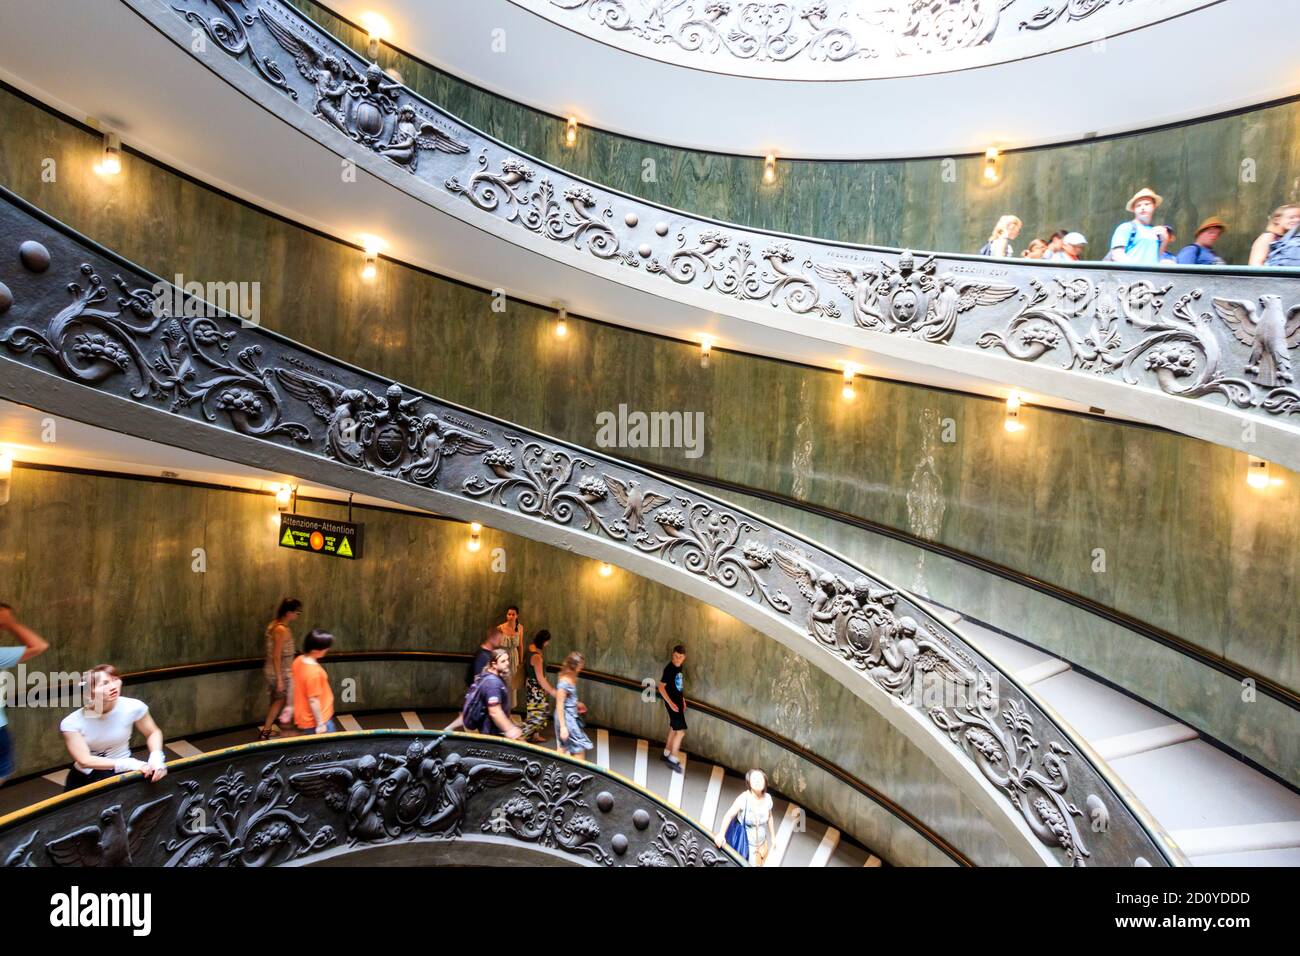 La moderna escalera de doble hélice, conocida como la escalera Bramante con balaustrada ornamentada diseñada por Giuseppe Momo en 1932 en el Museo Vaticano Foto de stock